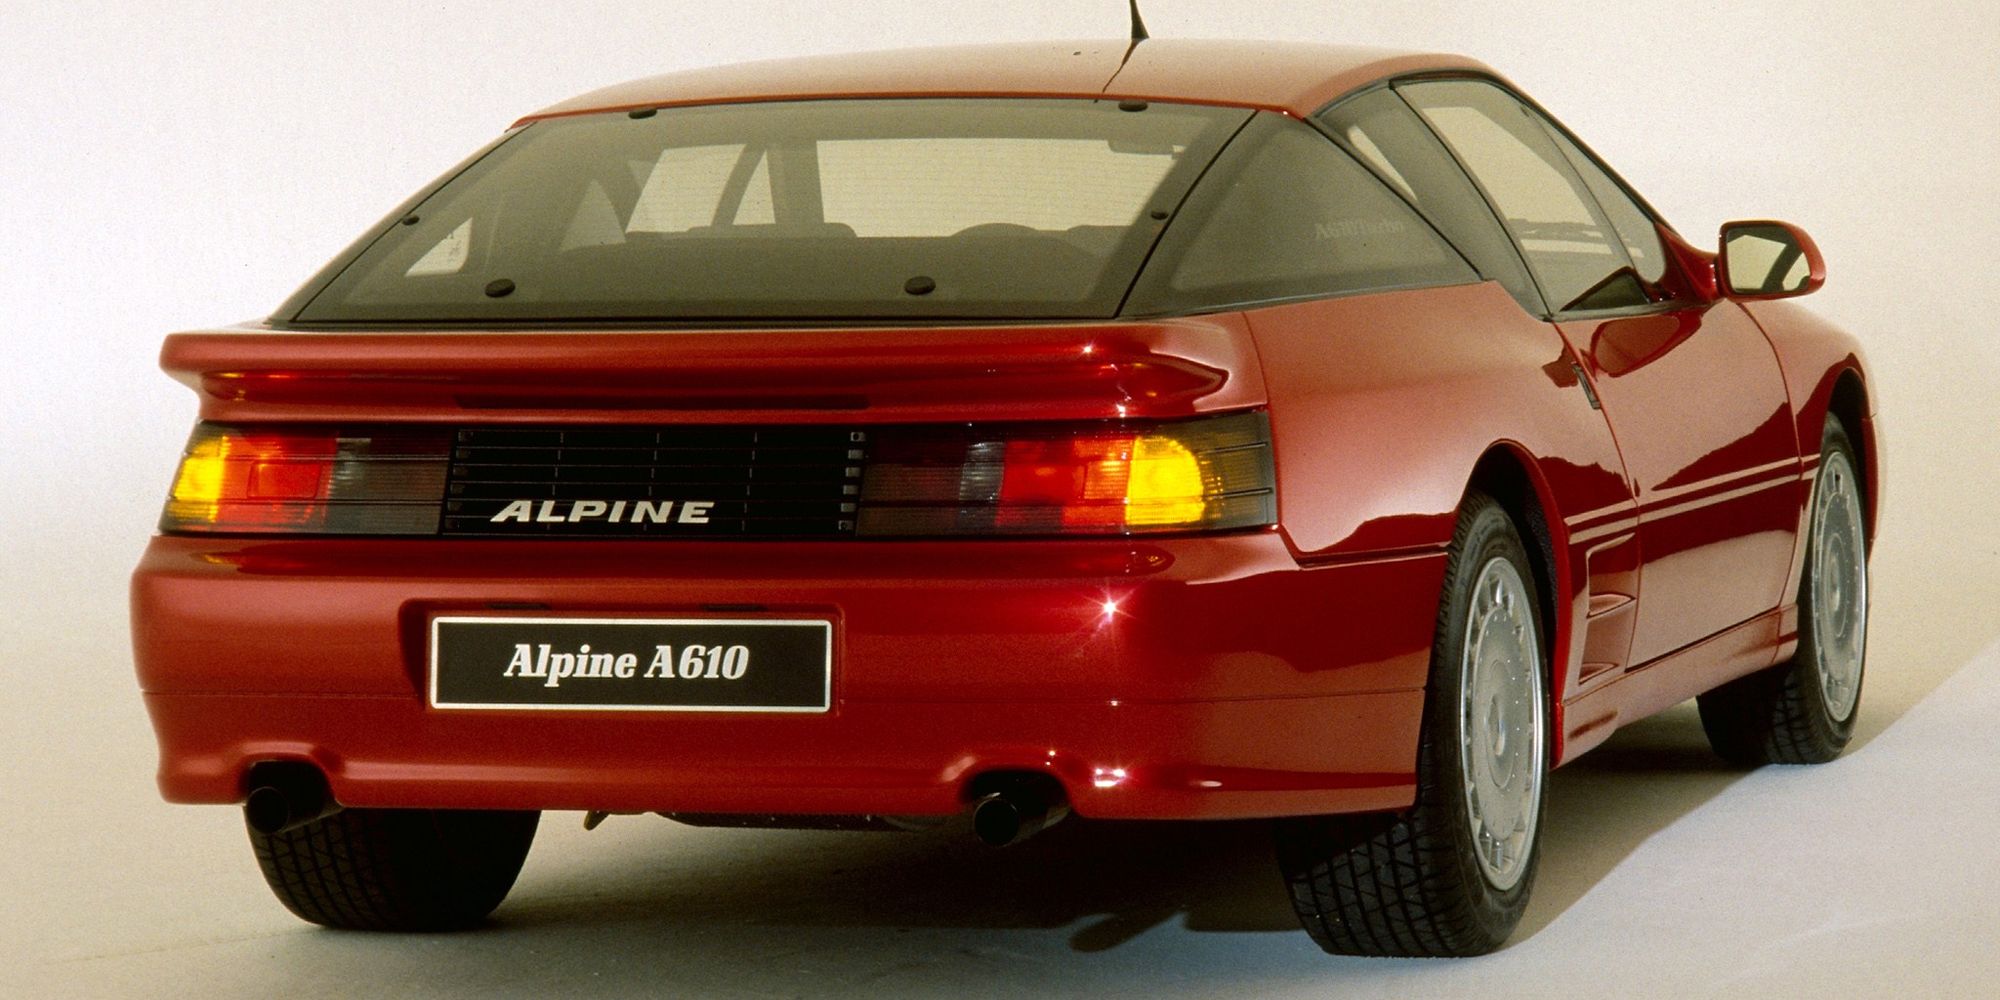 A red Alpine A610